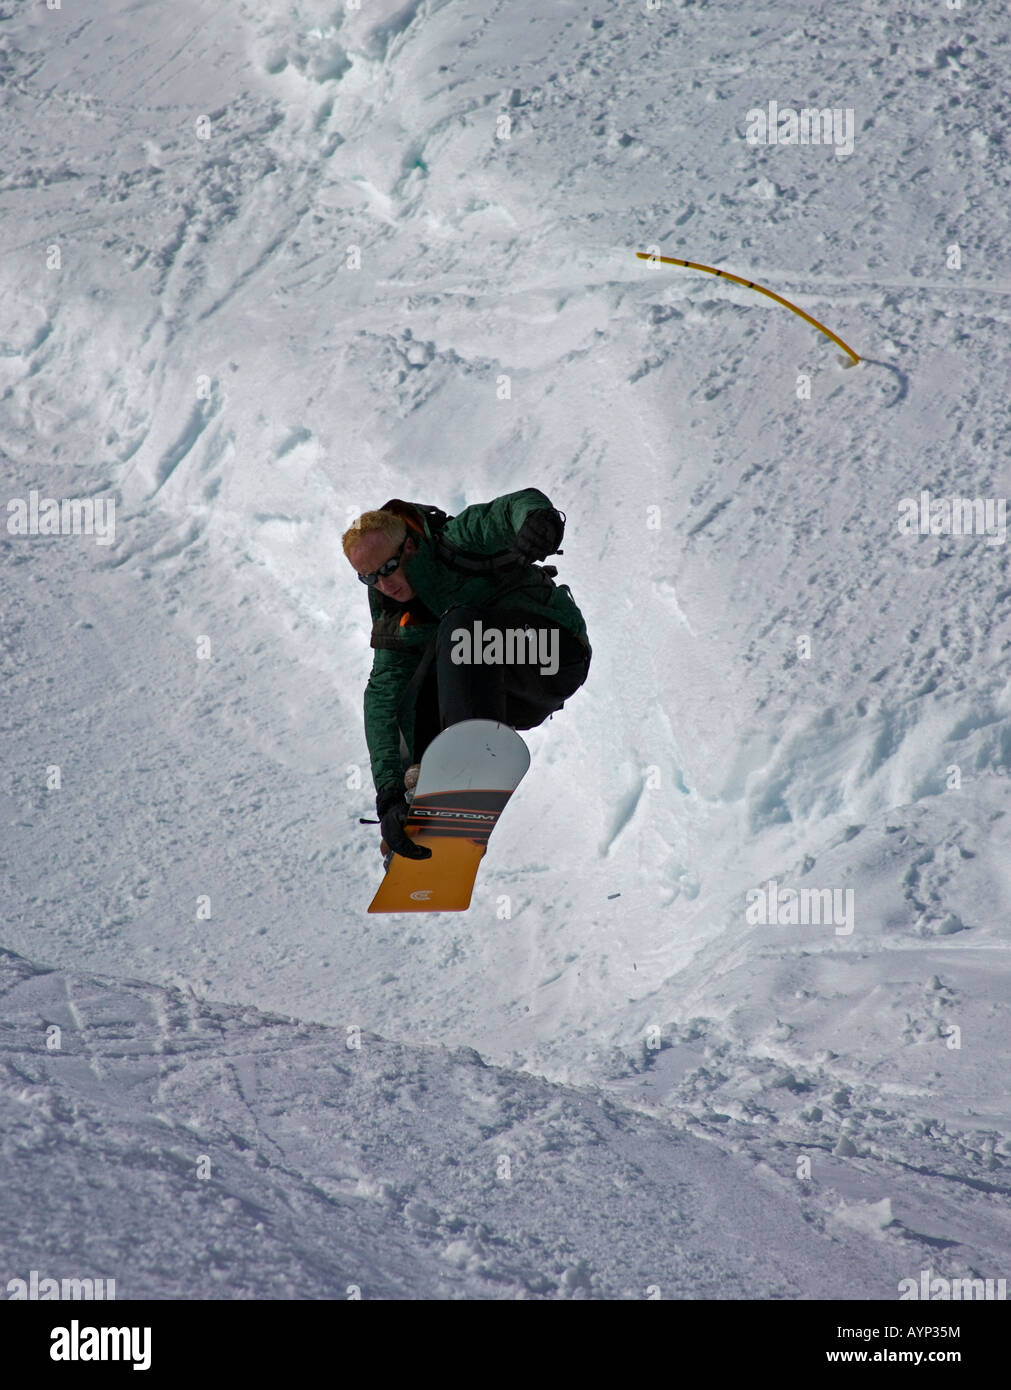 Einsamer Snowboarder springt in die Luft, Glencoe Ski Pisten, Lochaber, Schottland, UK, Europa Stockfoto